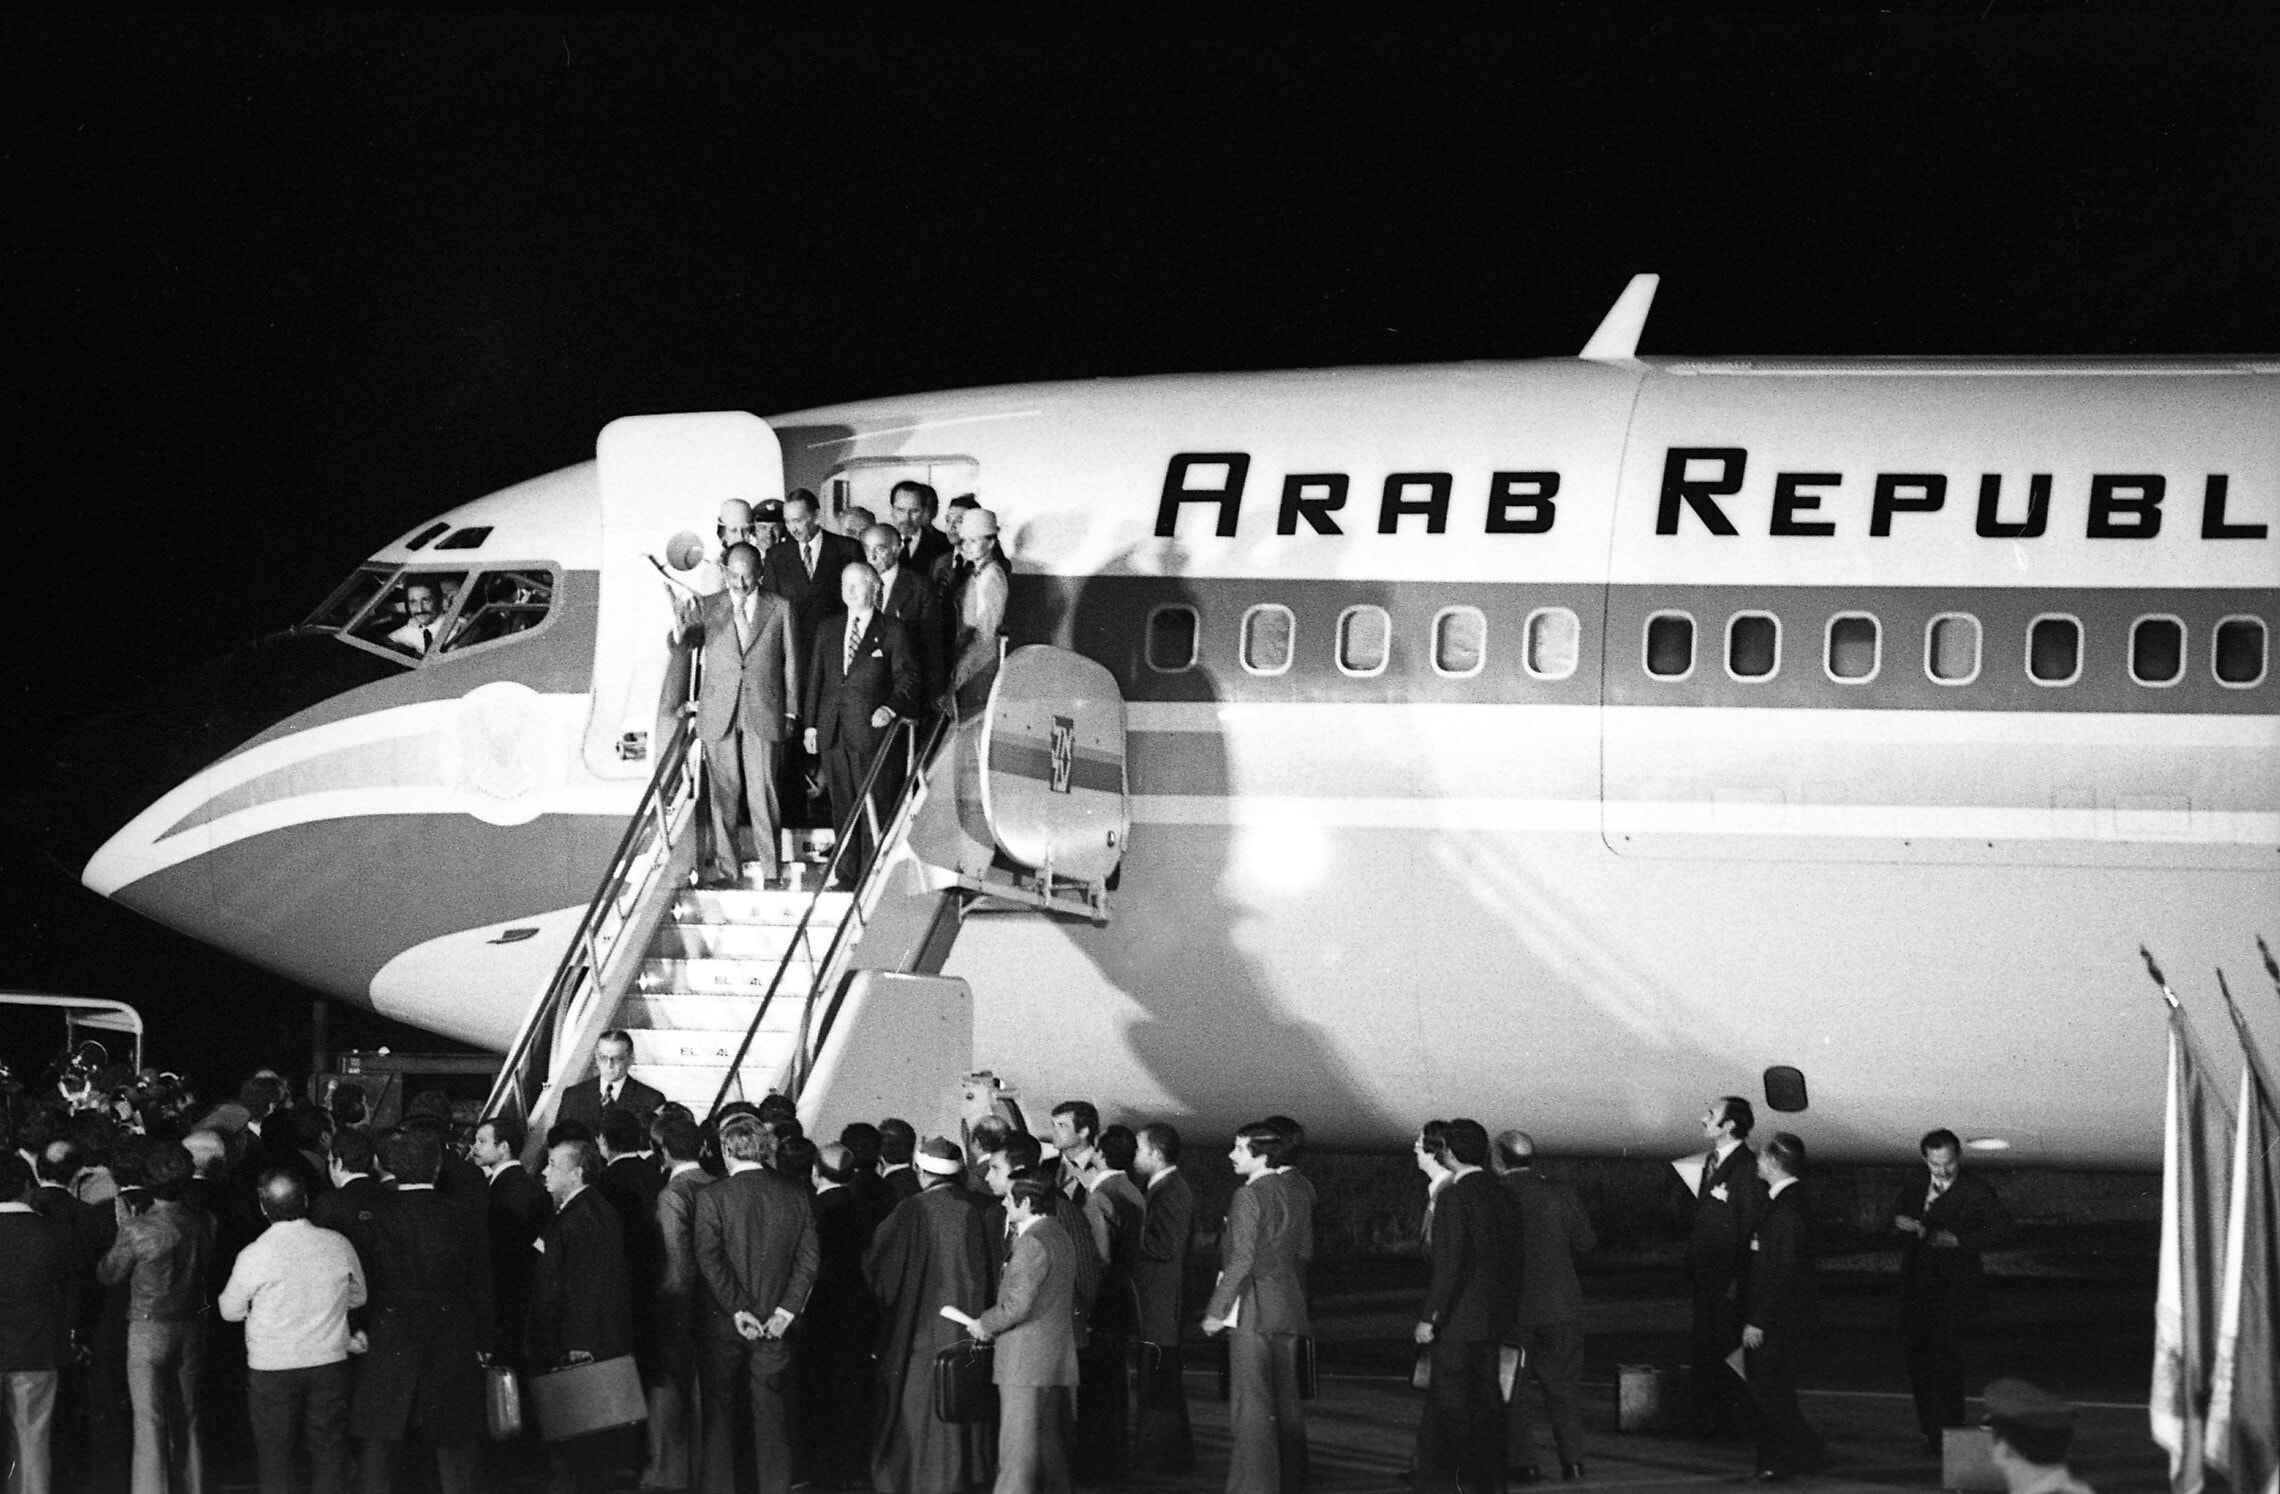 נשיא מצרים אנואר סאדאת ופמלייתו יוצאים מהמטוס הרשמי עם הגעתו לראשונה לישראל, 19 בנובמבר 1977 (צילום: ארכיון דן הדני, הספרייה הלאומית)